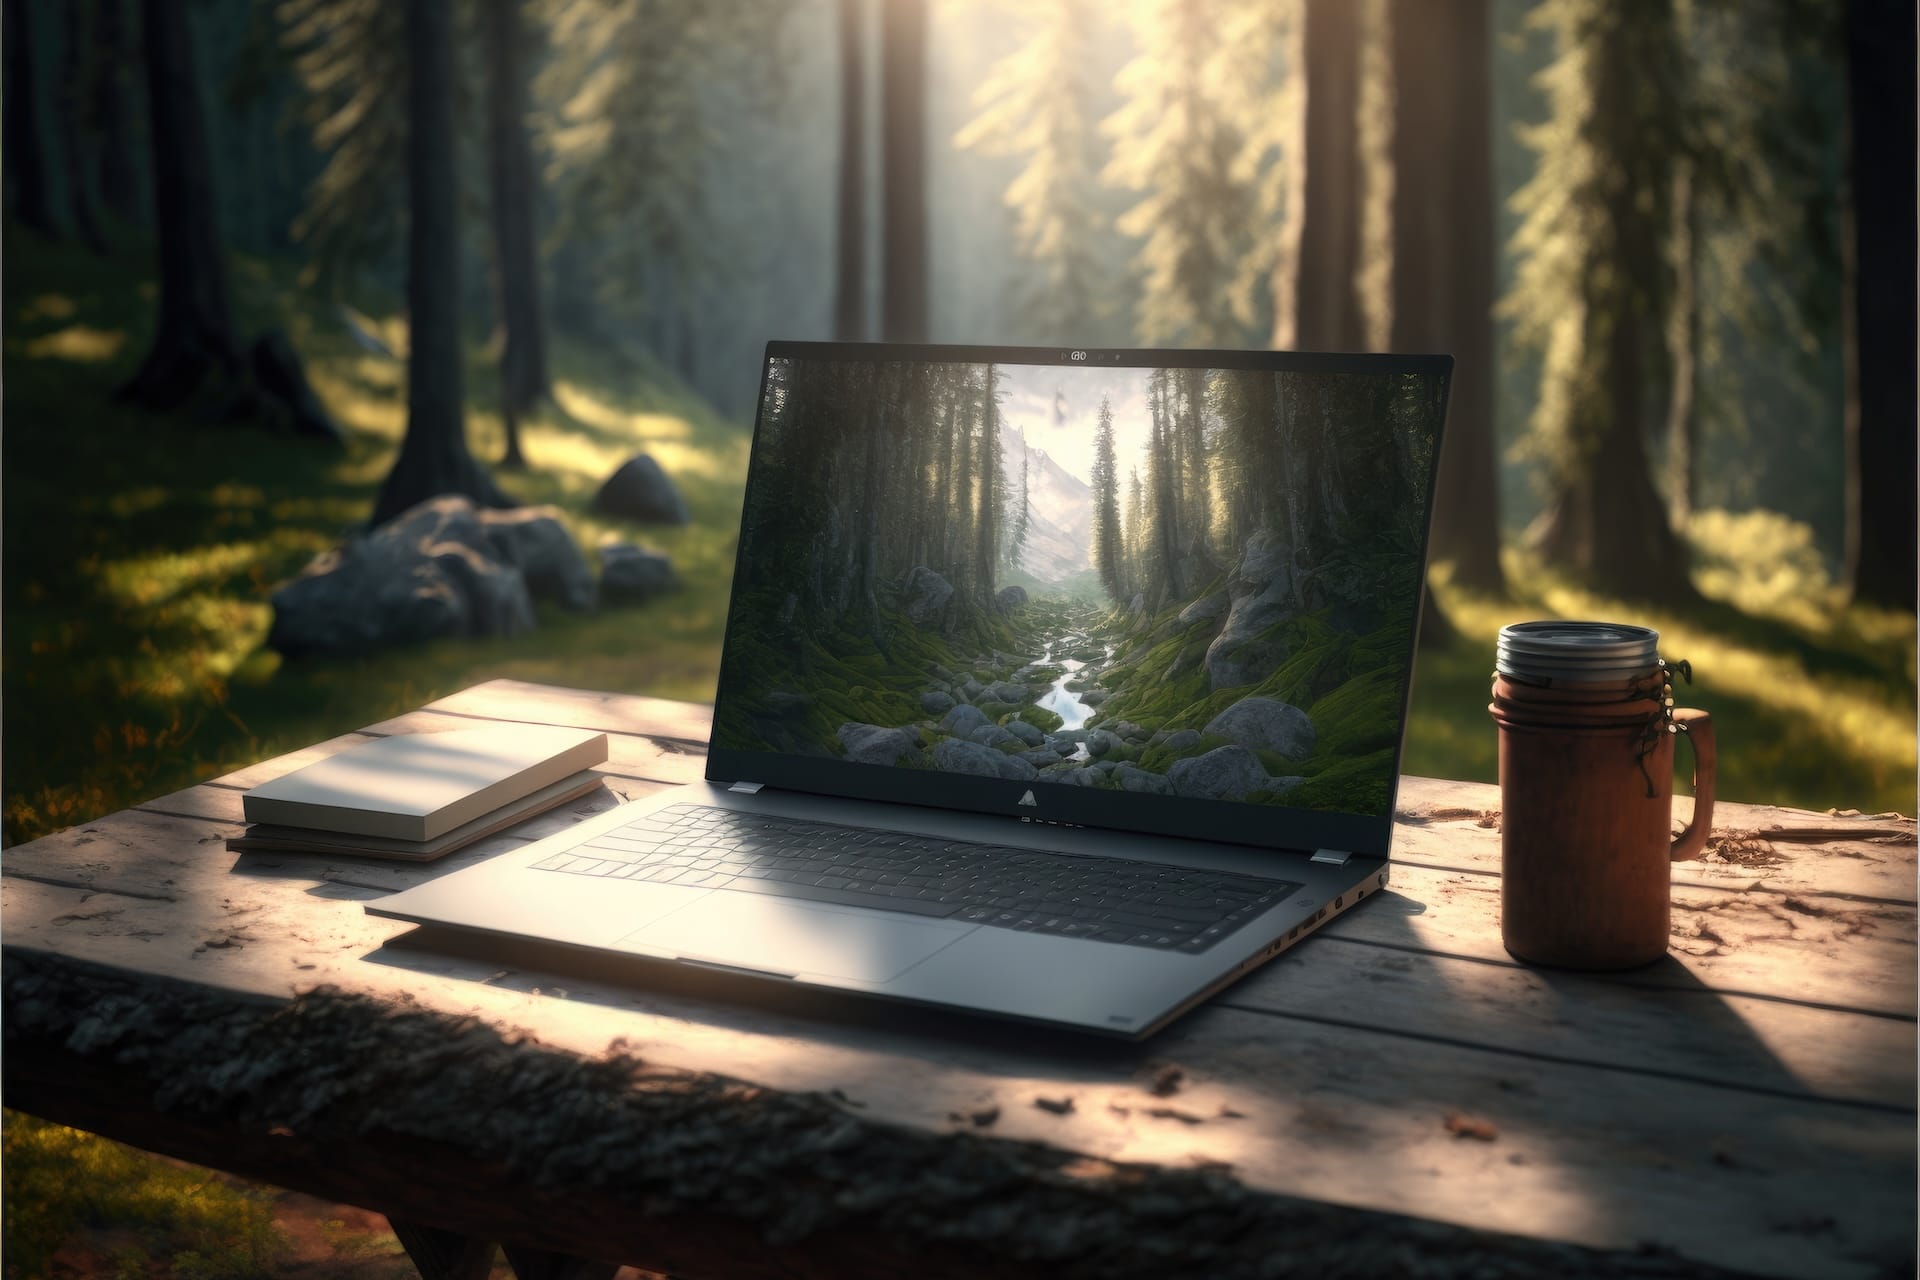 Kannettava tietokone pöydällä metsässä, aurinko pilkistää puiden välistä.